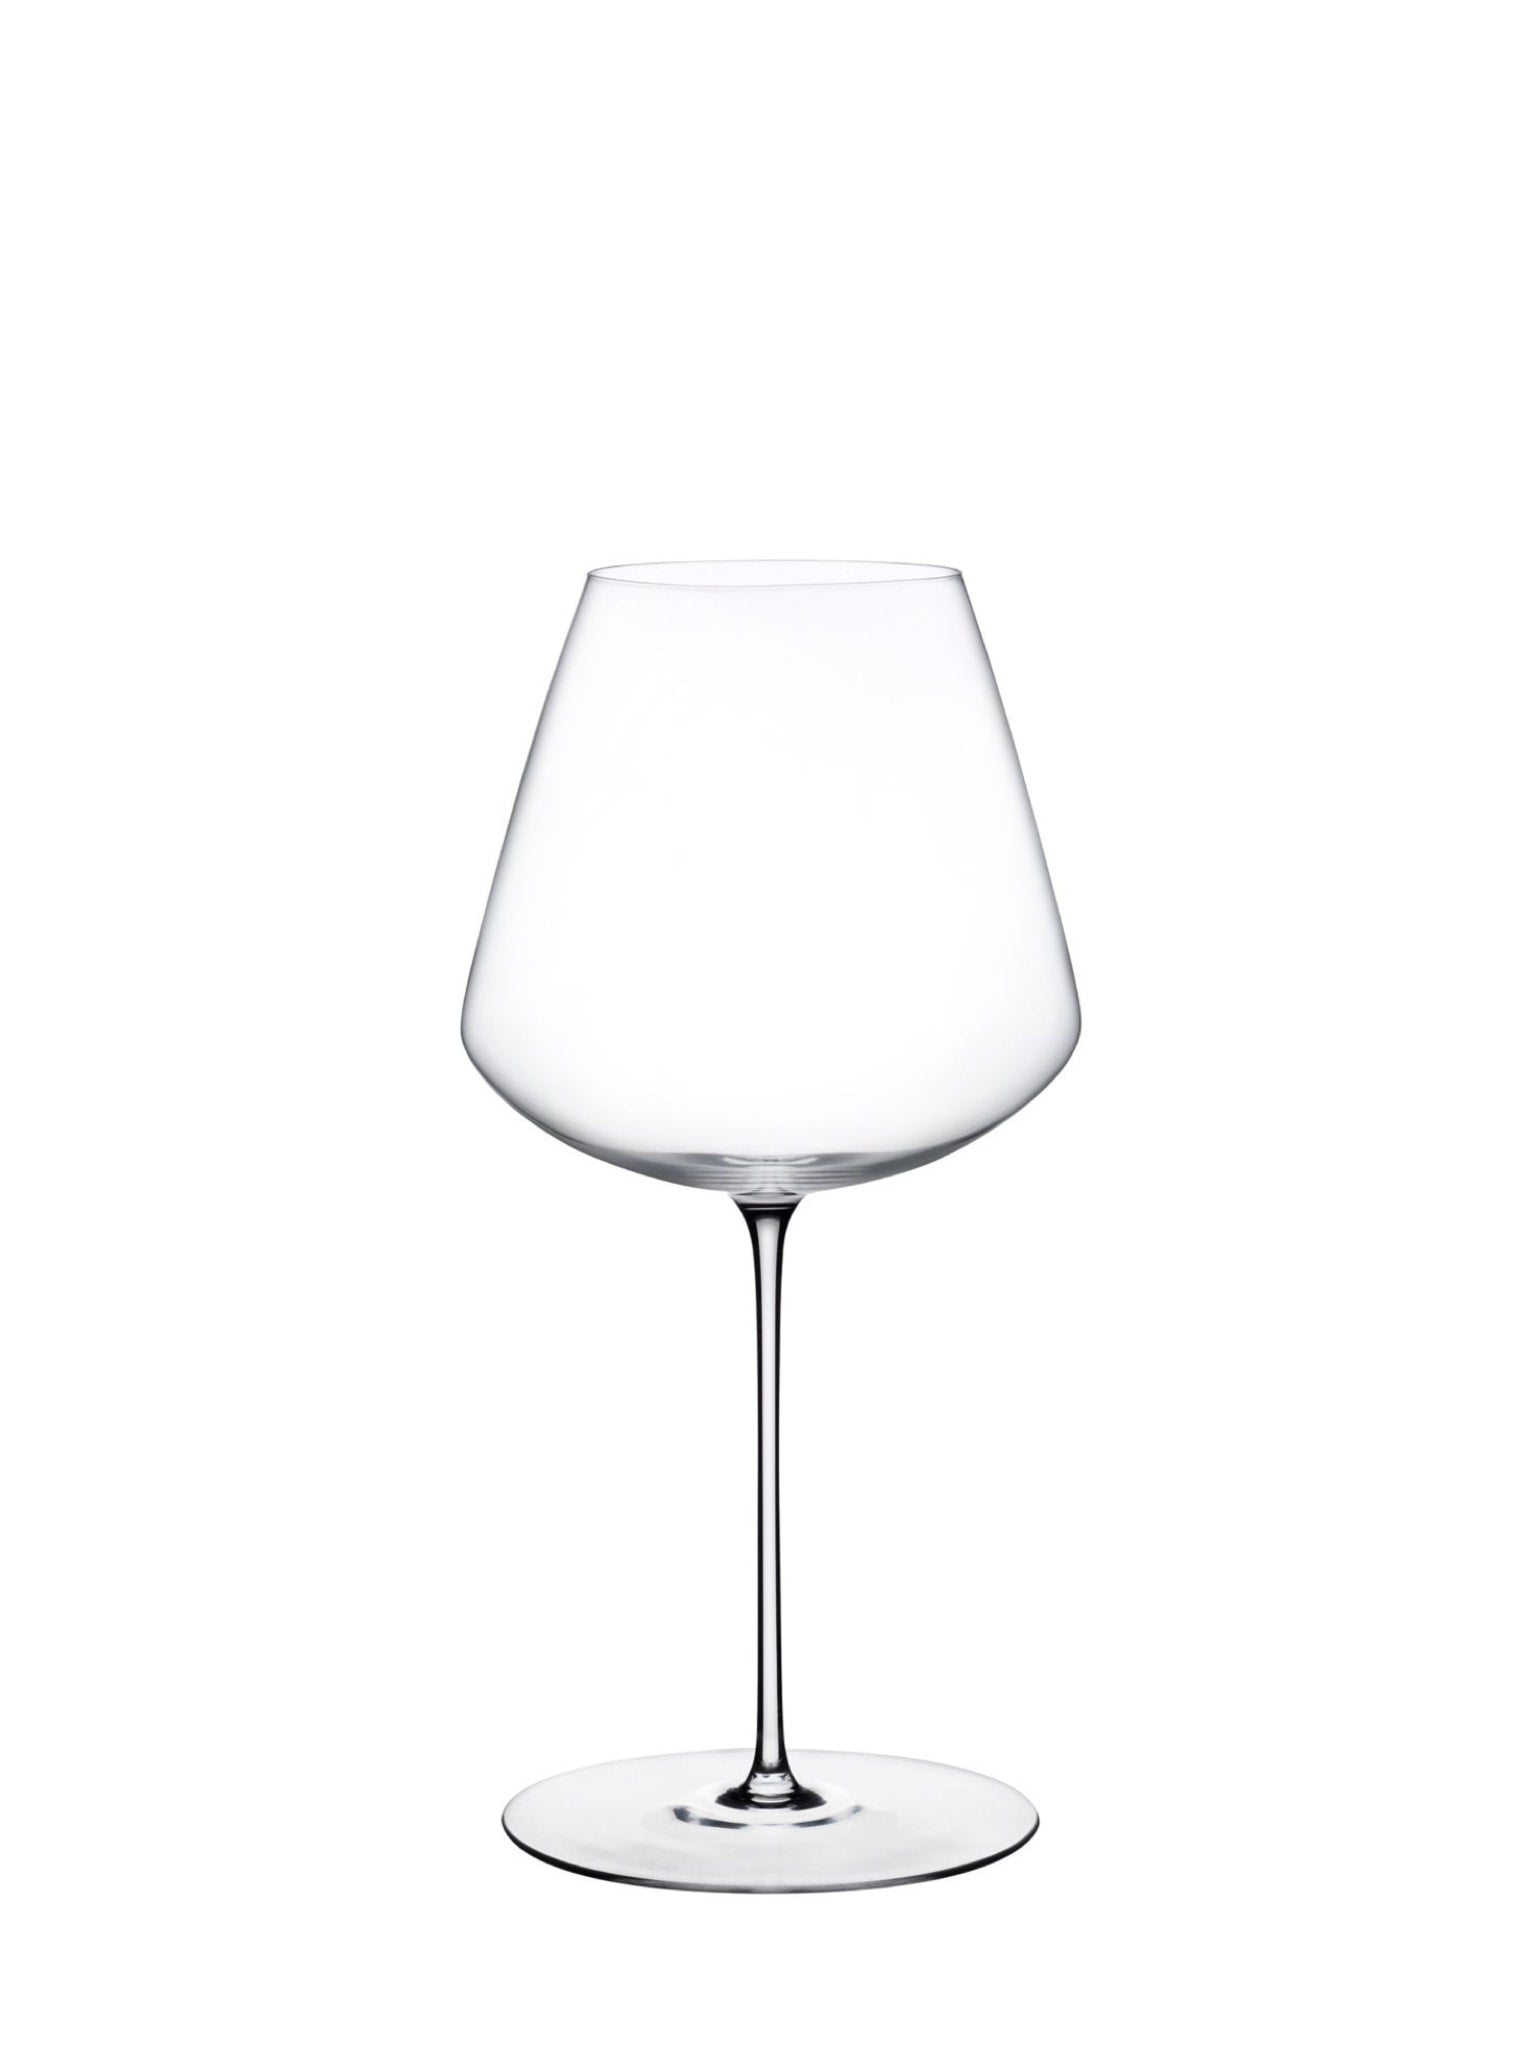 Stem Zero elegant rødvin glas med en kapacitet på 65,0 cl - perfekt til enhver lejlighed